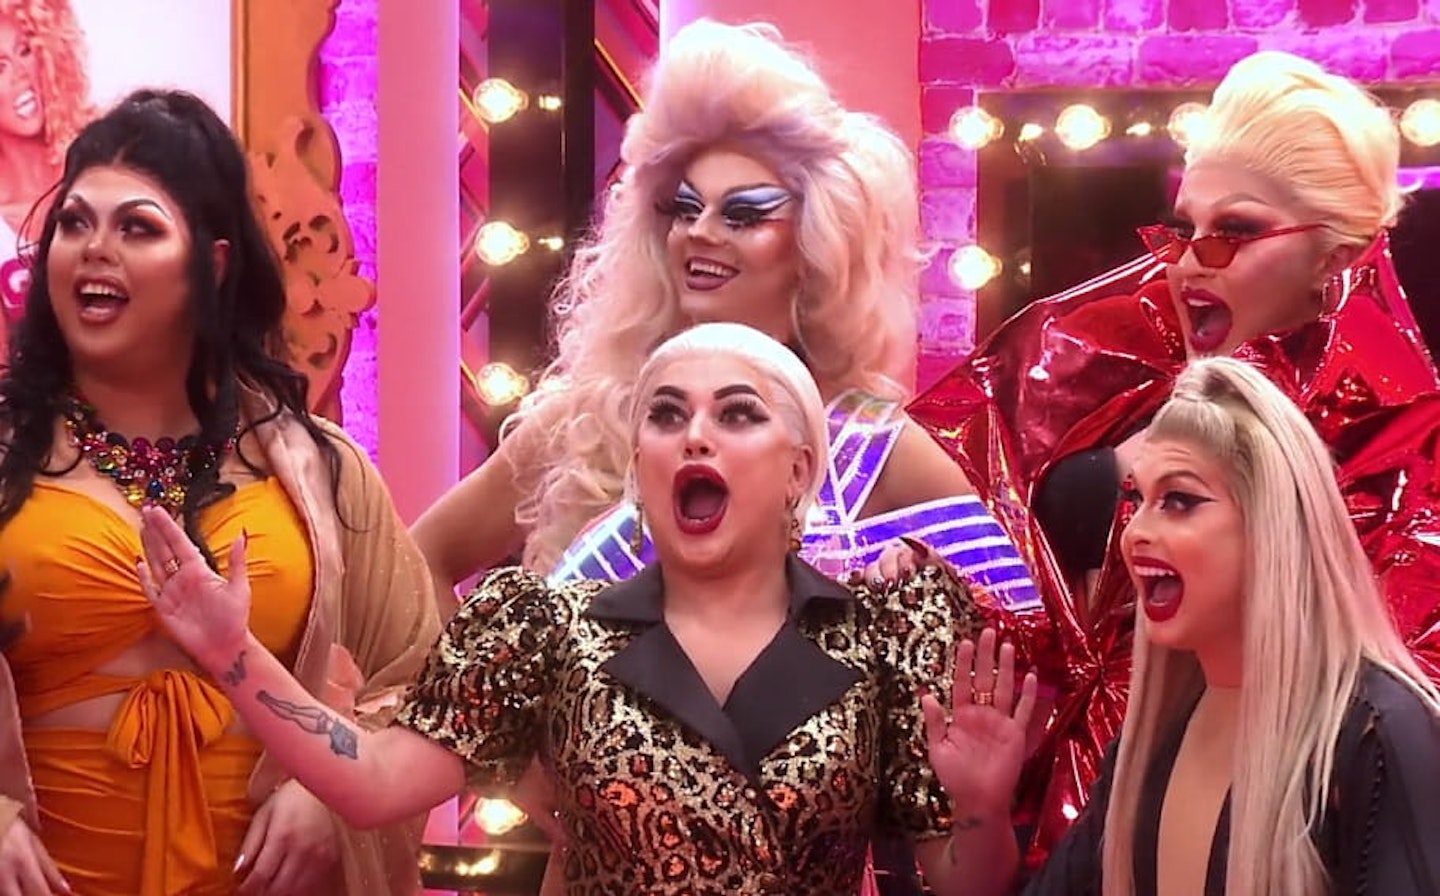 Vegan 'Scaredy Kat' Is the Official Queen of RuPaul's Drag Race UK